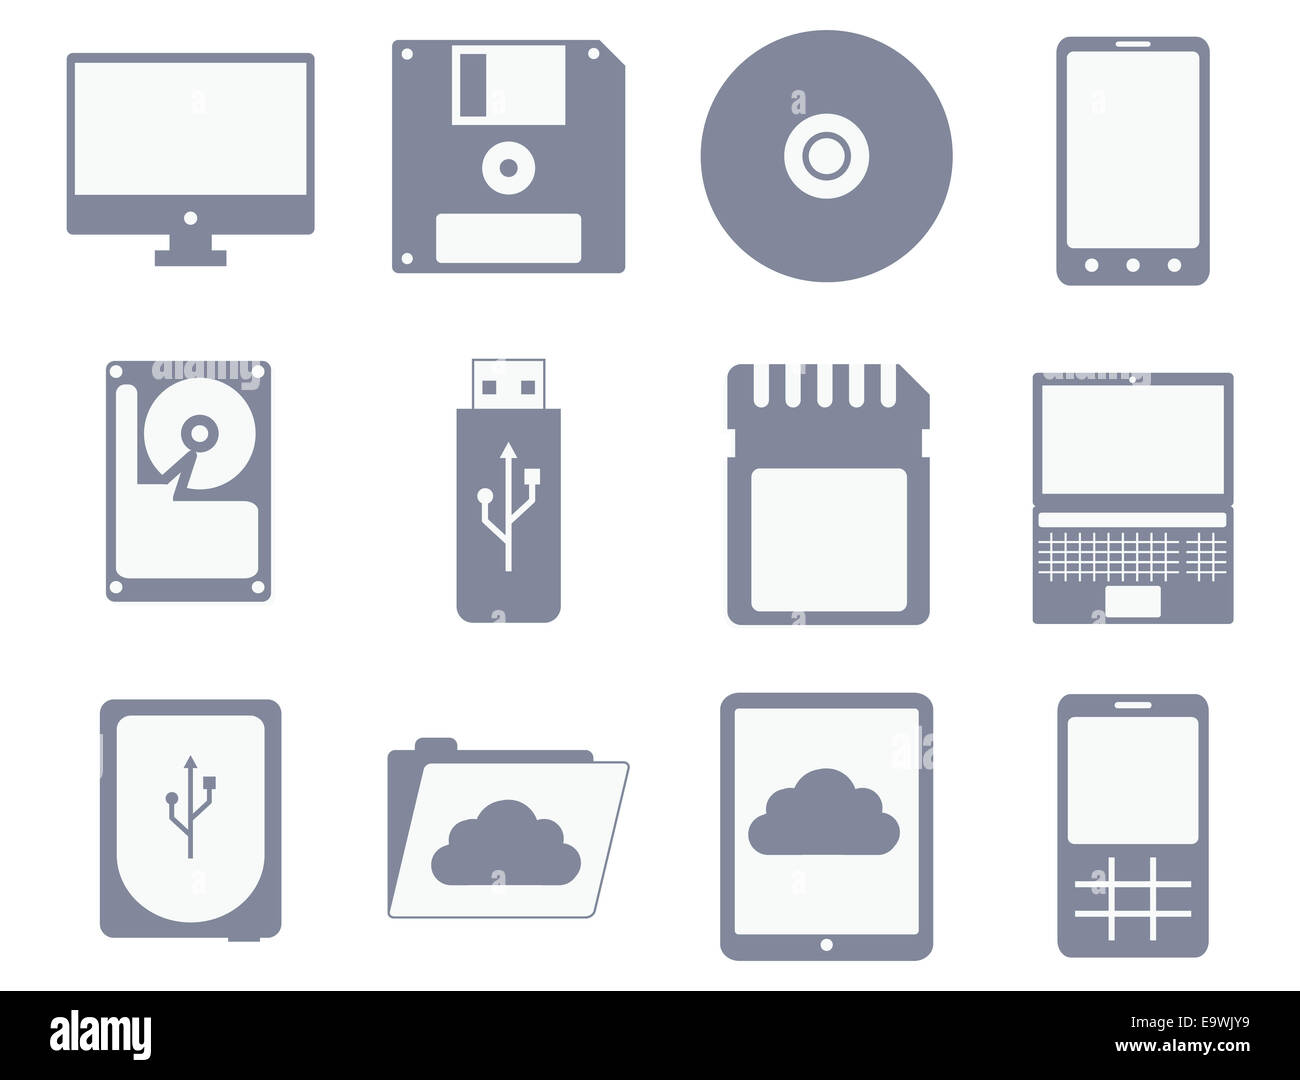 Vector icon set de différents dispositifs de stockage et de l'ordinateur : flopp, disque compact, disque dur, tablette, téléphone mobile - isolé sur w Banque D'Images